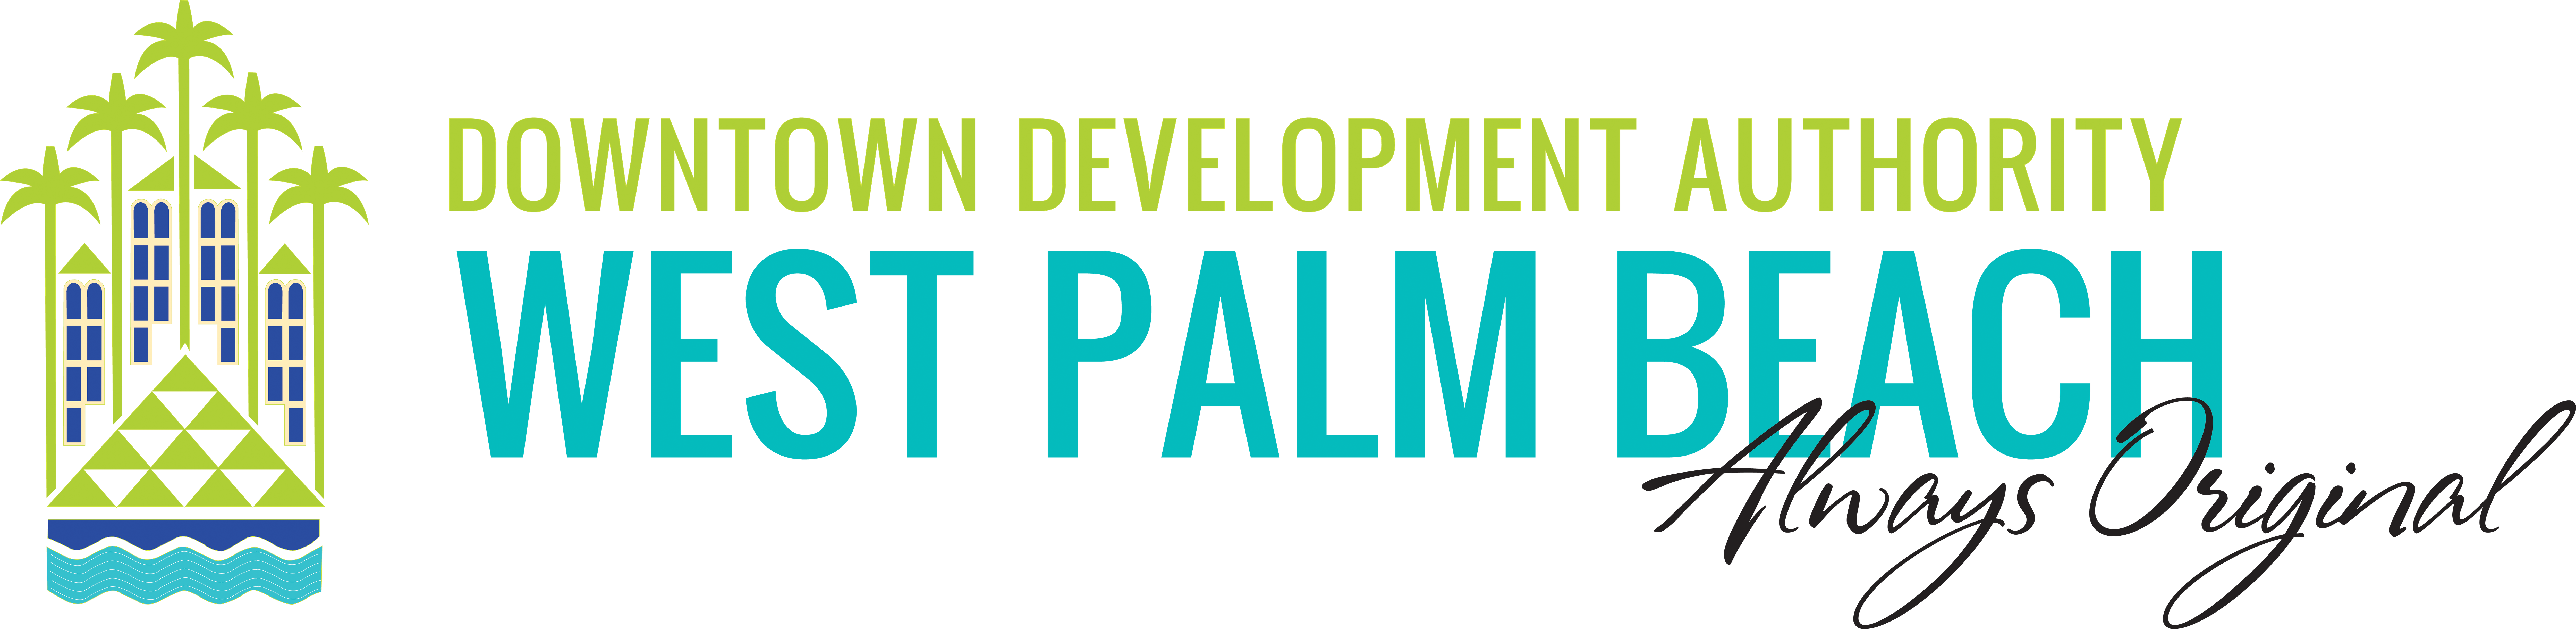 West palm Beach DDA logo